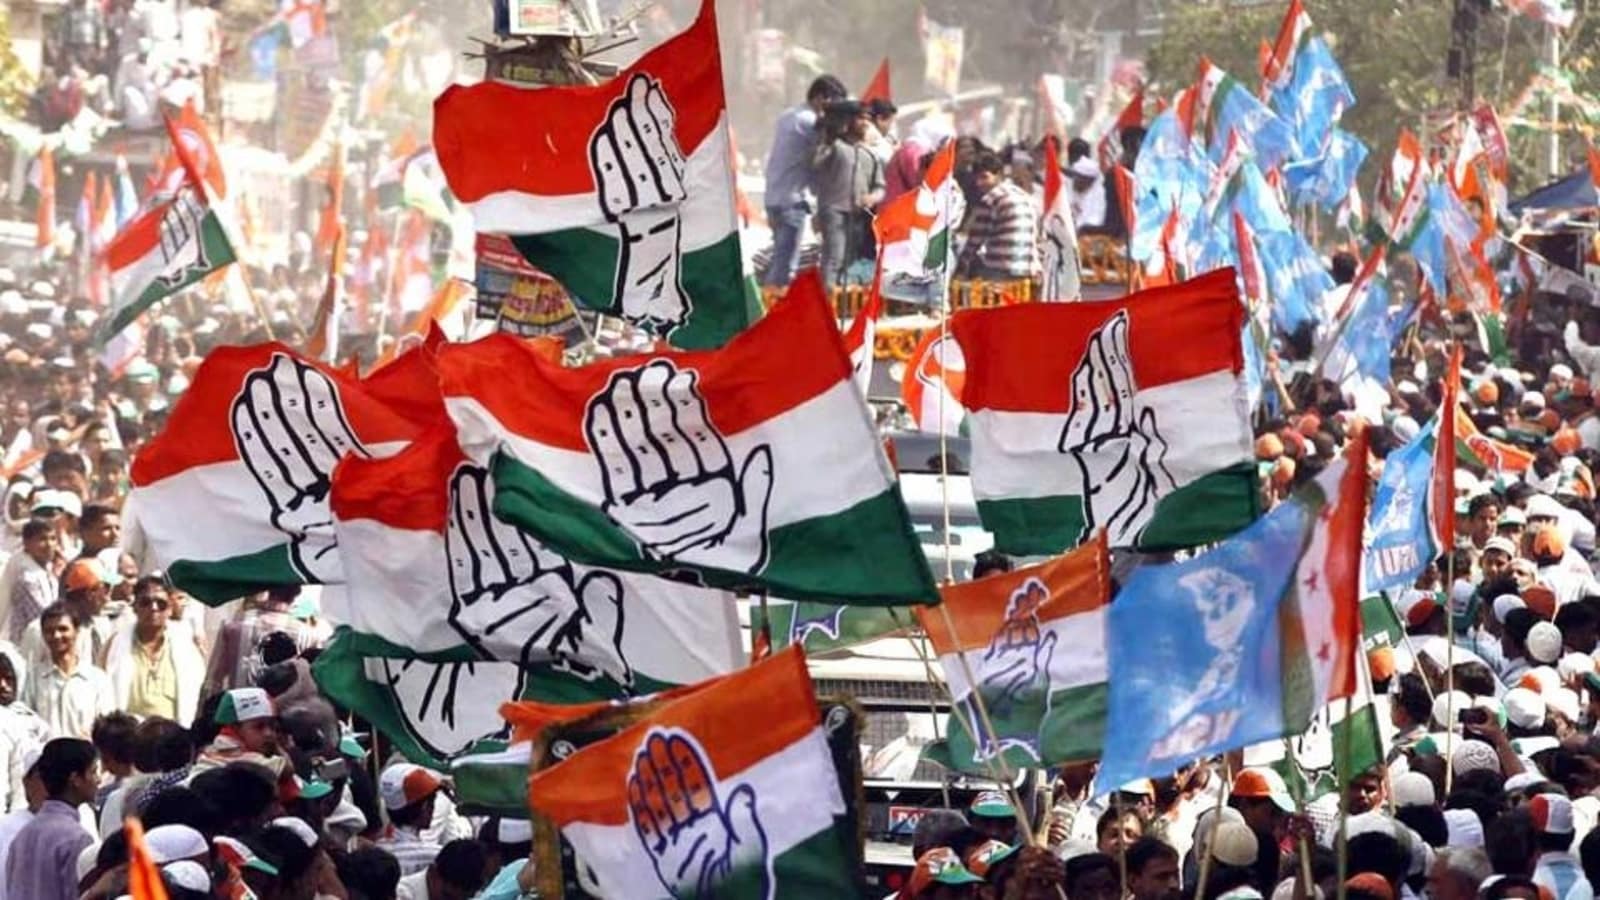 Karnataka in mind, Congress eyes Telangana